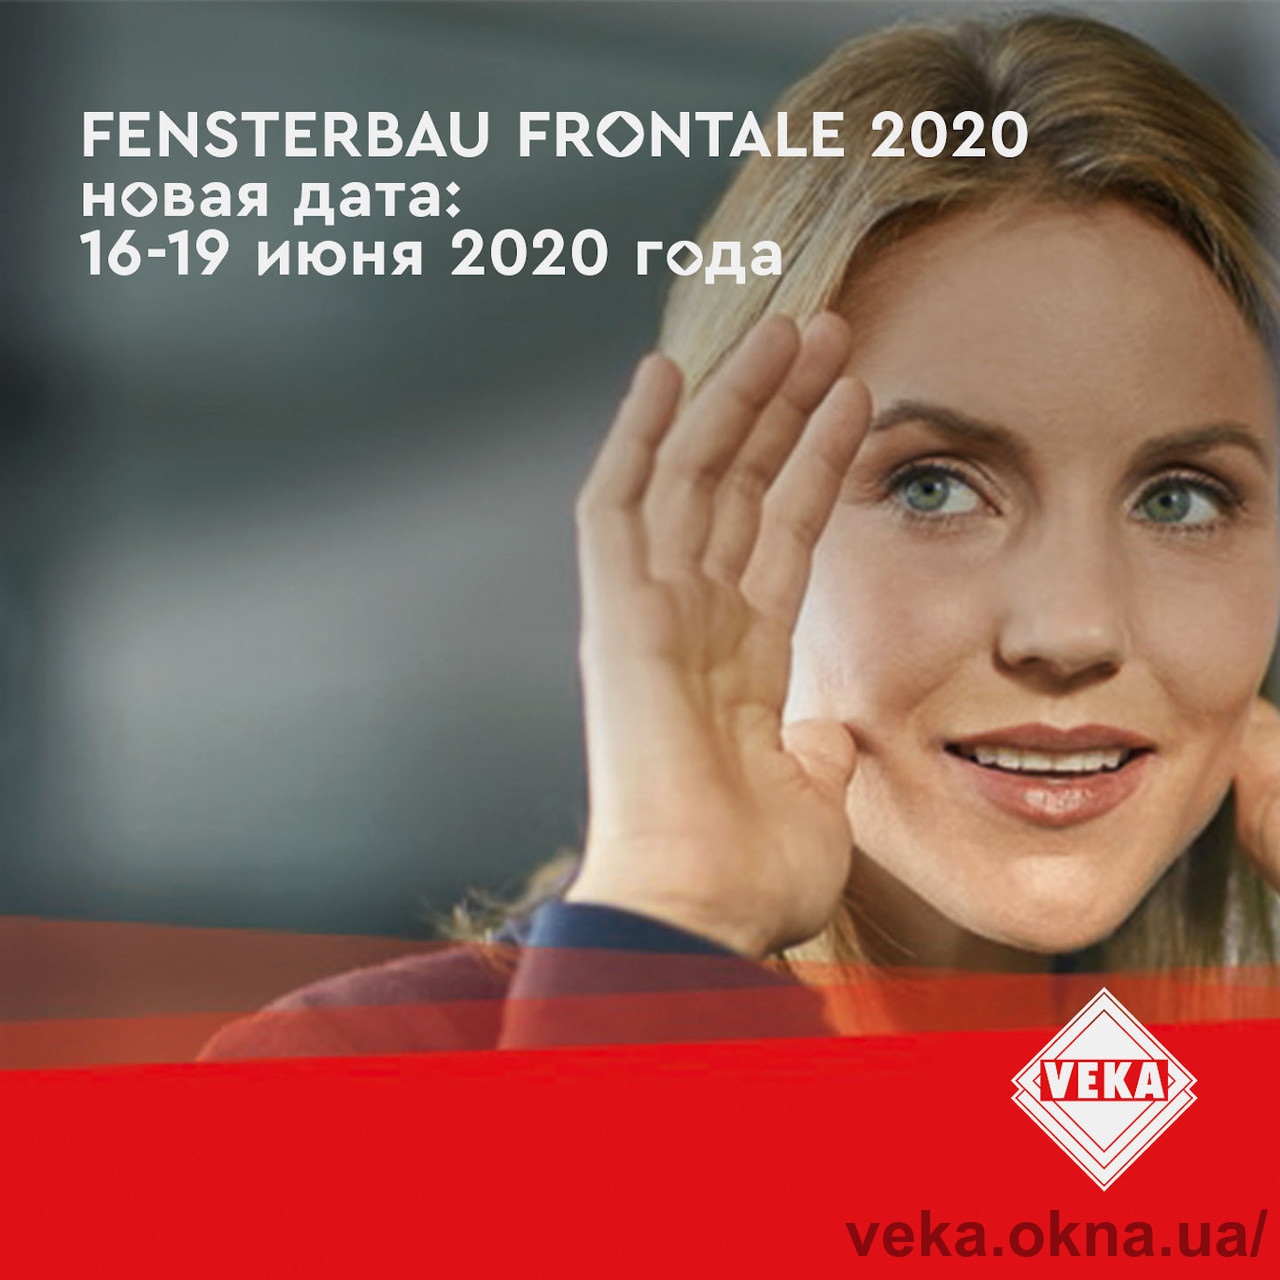 Новые даты проведения FENSTERBAU FRONTALE 2020!